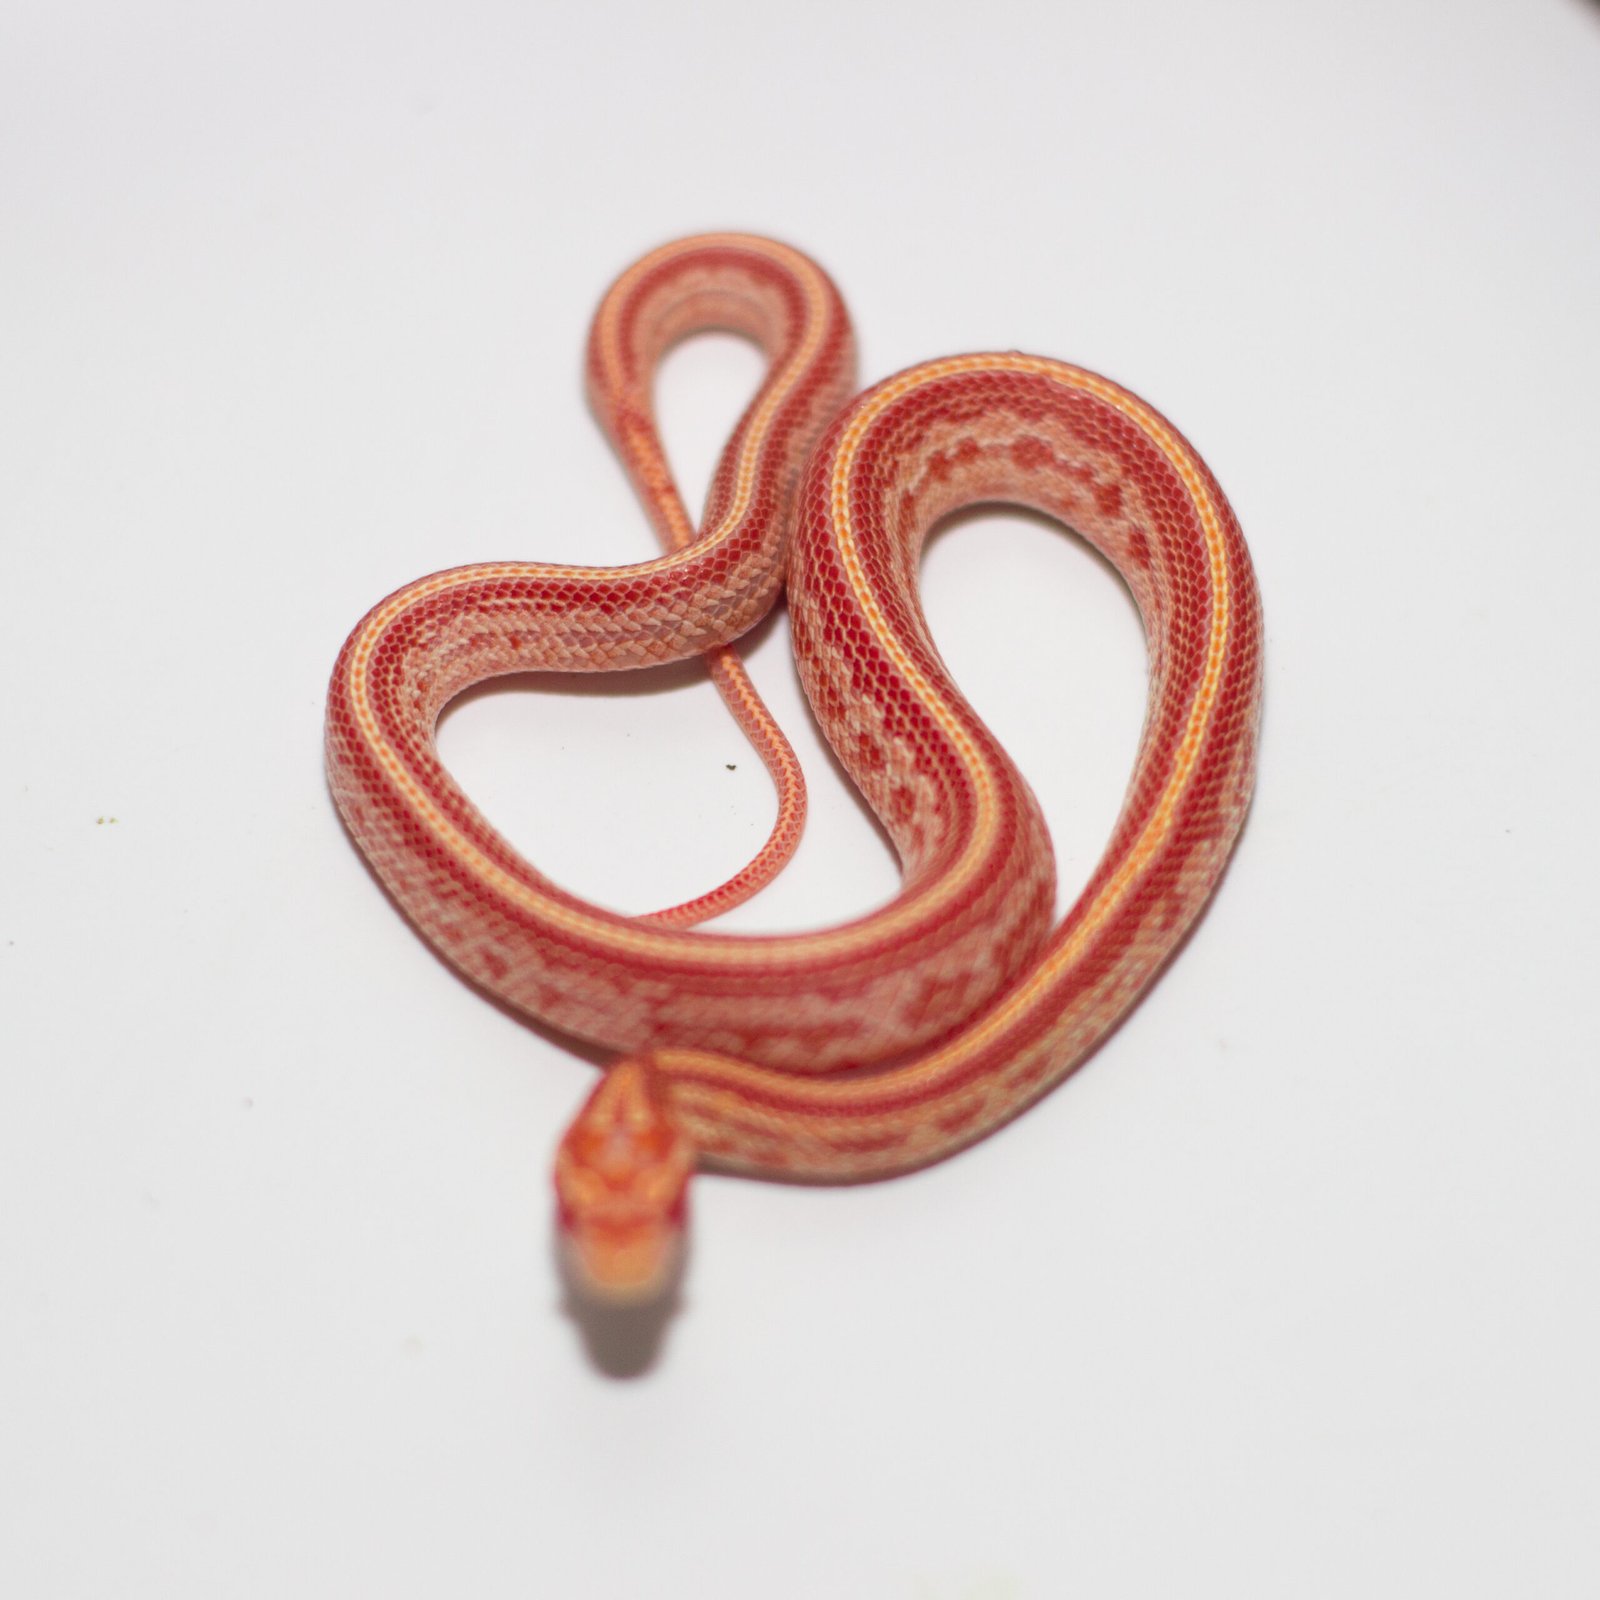 anery tessera corn snake